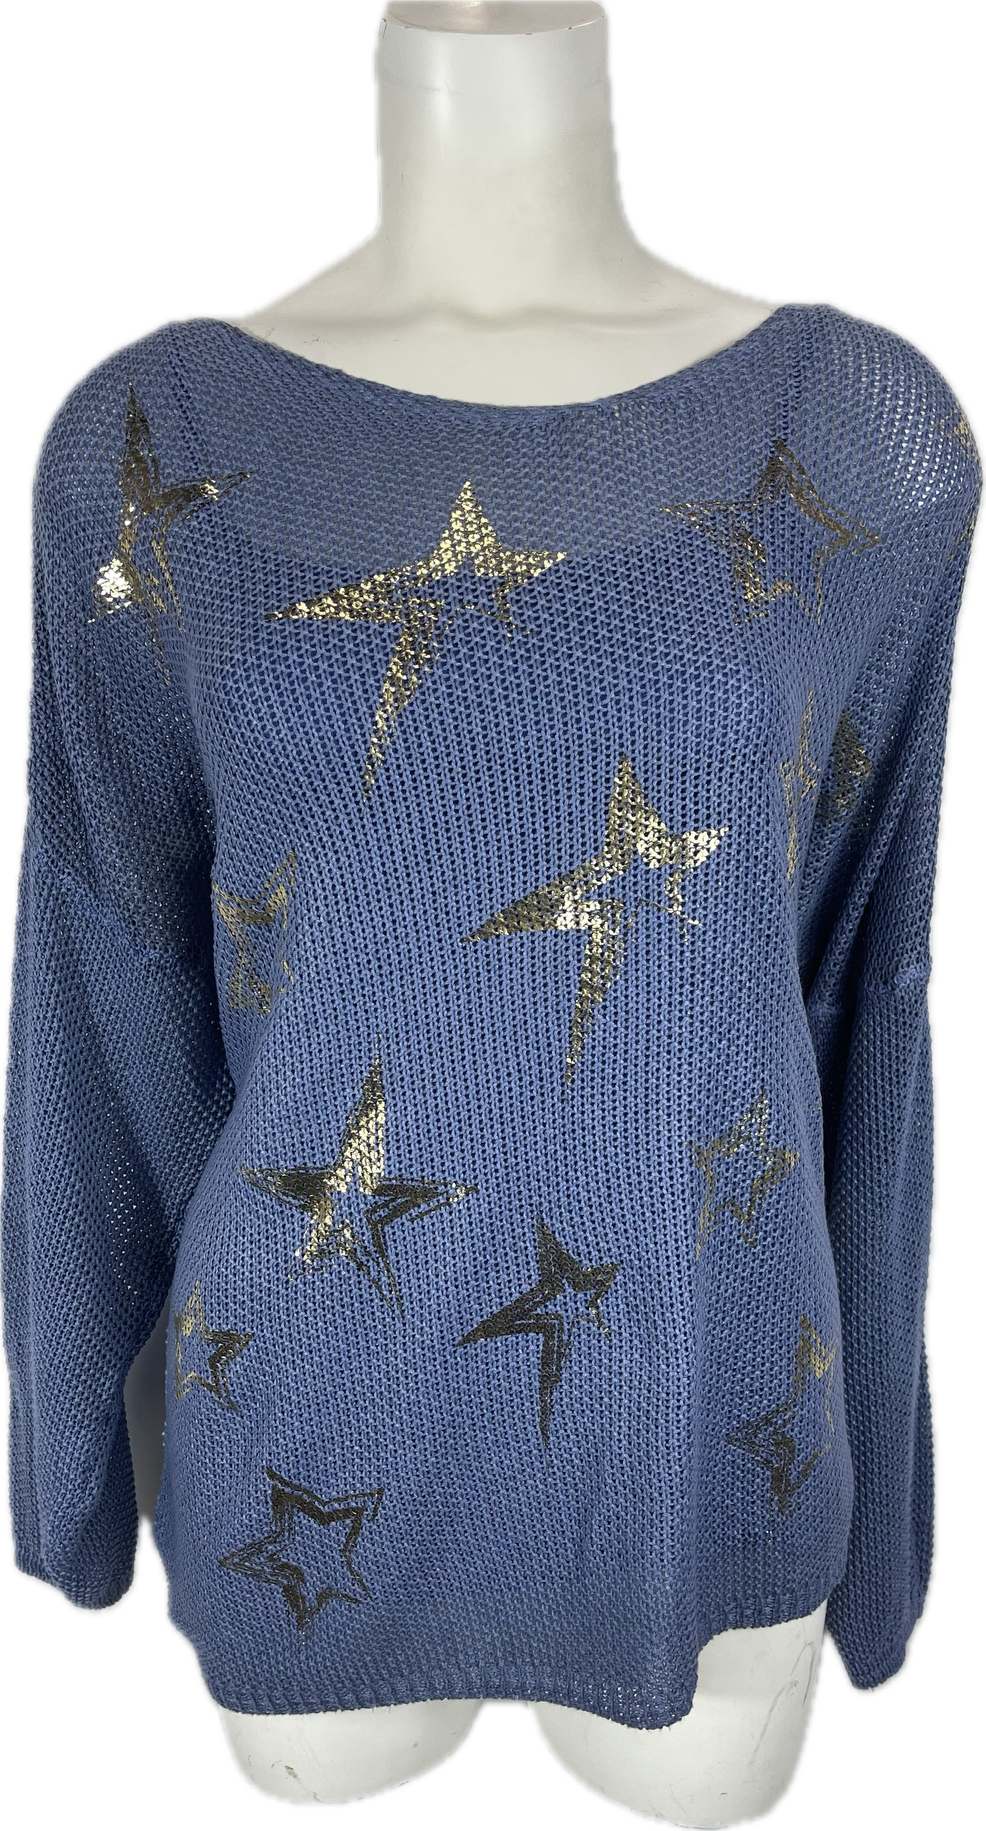 Lightweight Star Sweater